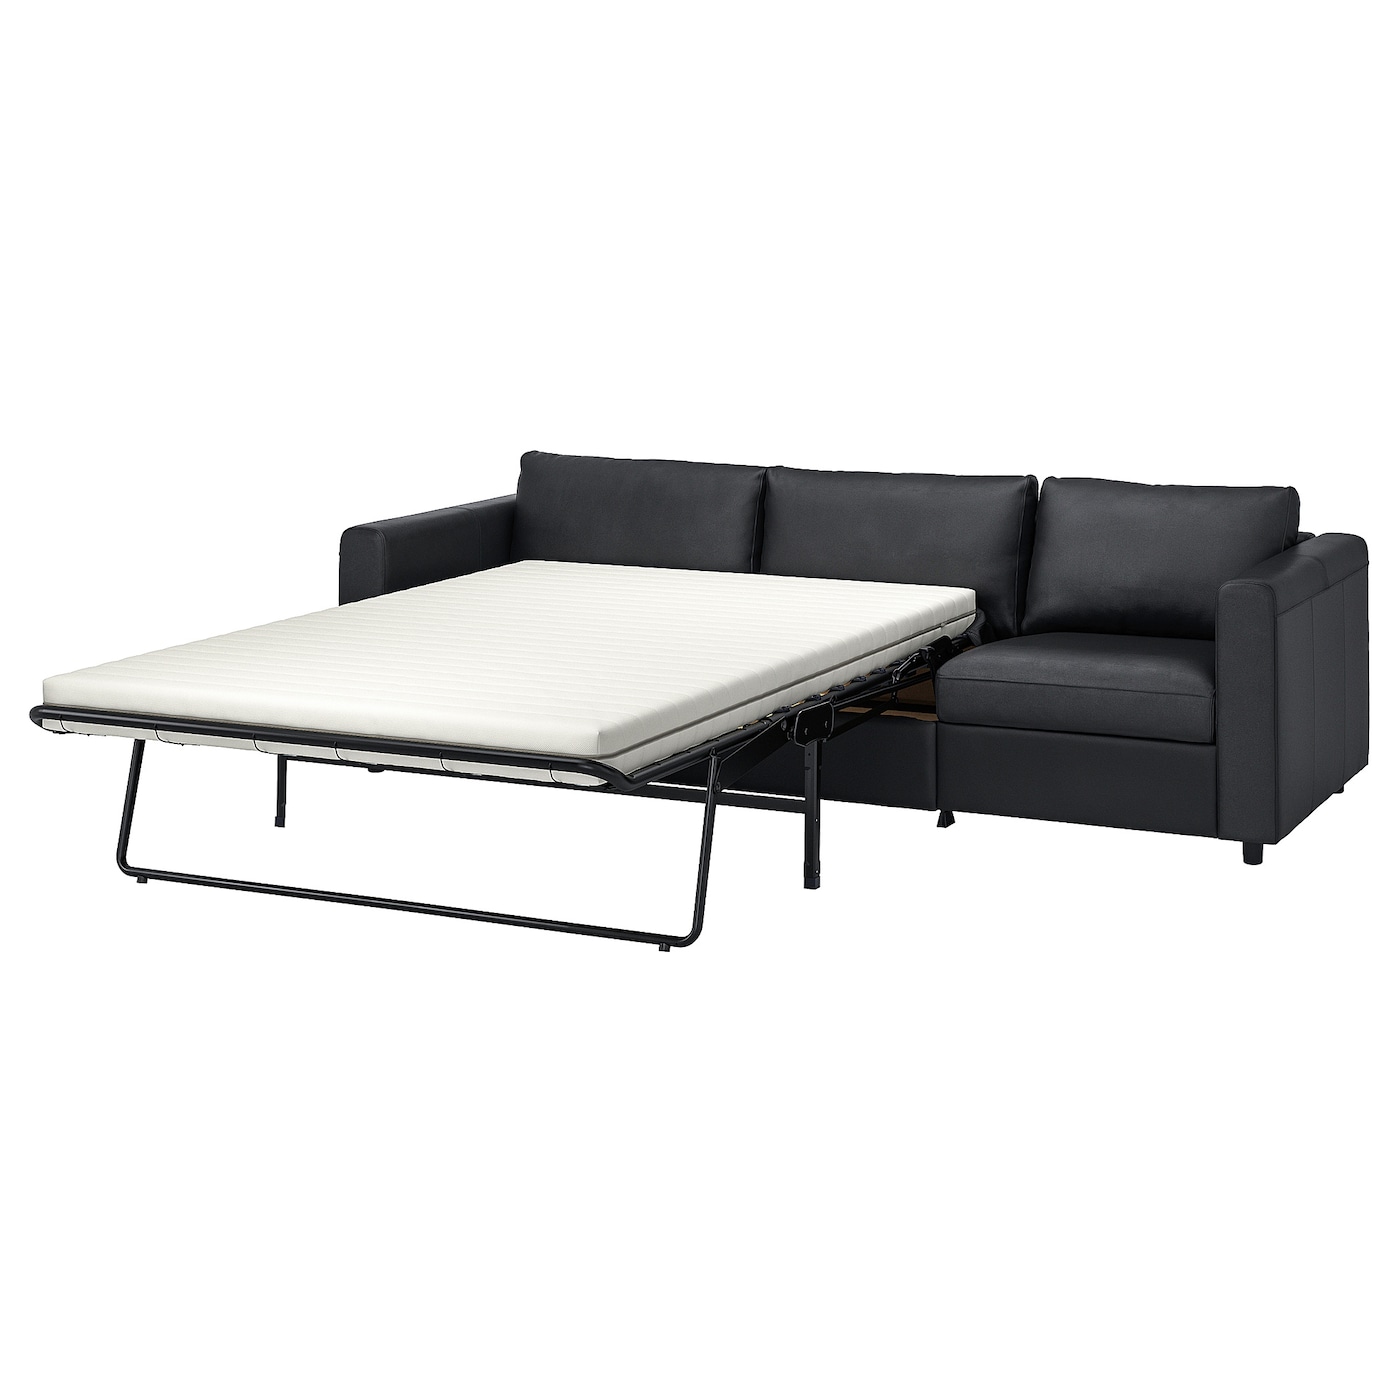 3-местный диван с шезлонгом - IKEA VIMLE, 261х98х83 см, черный, кожа, ВИМЛЕ ИКЕА